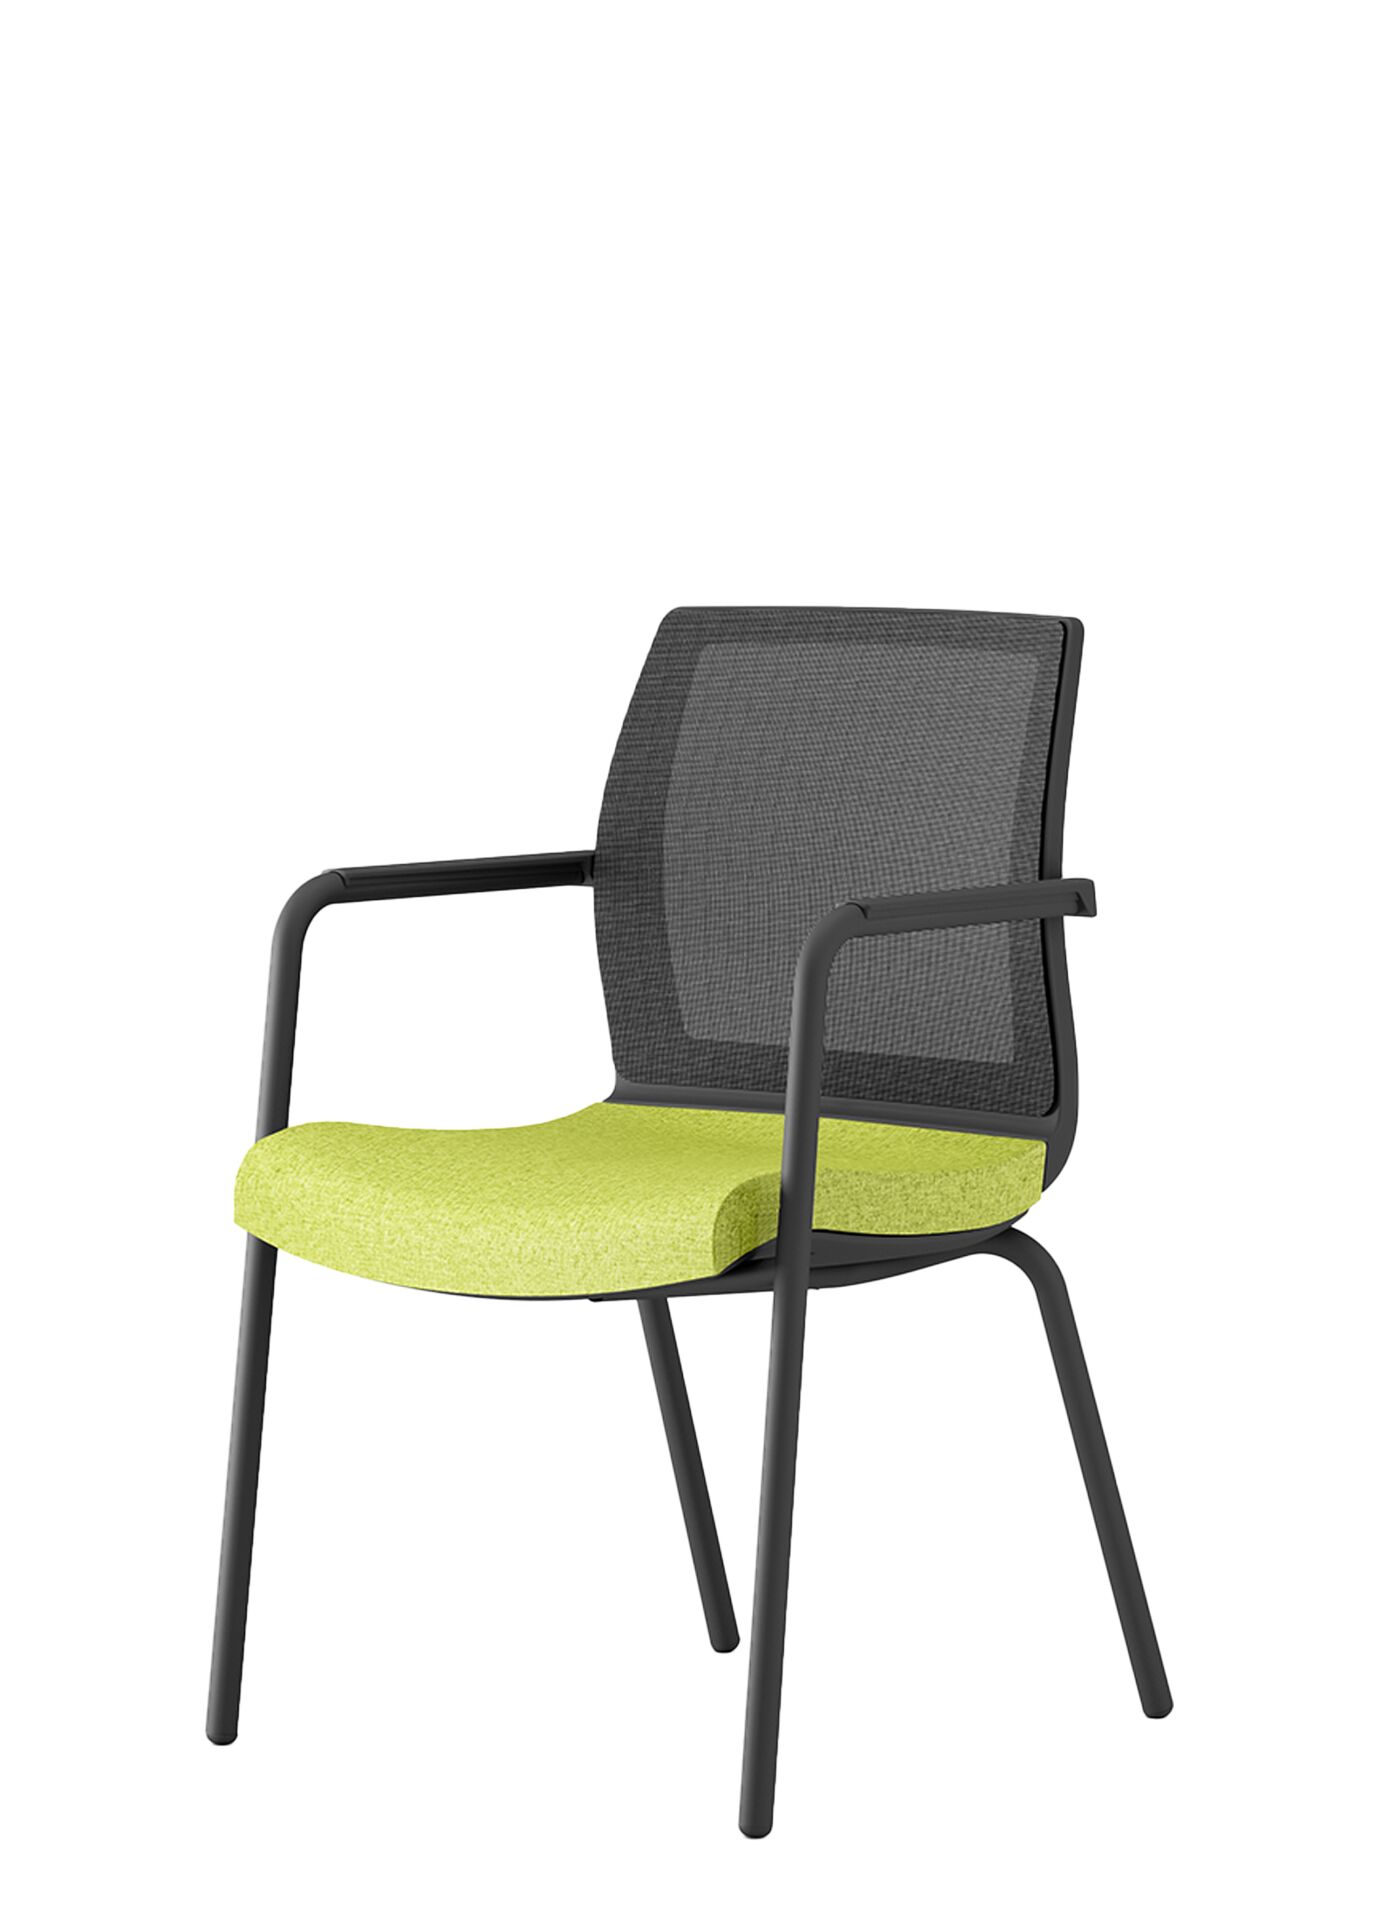 Zielone krzesło biurowe z czarnymi elementami smart scena 1